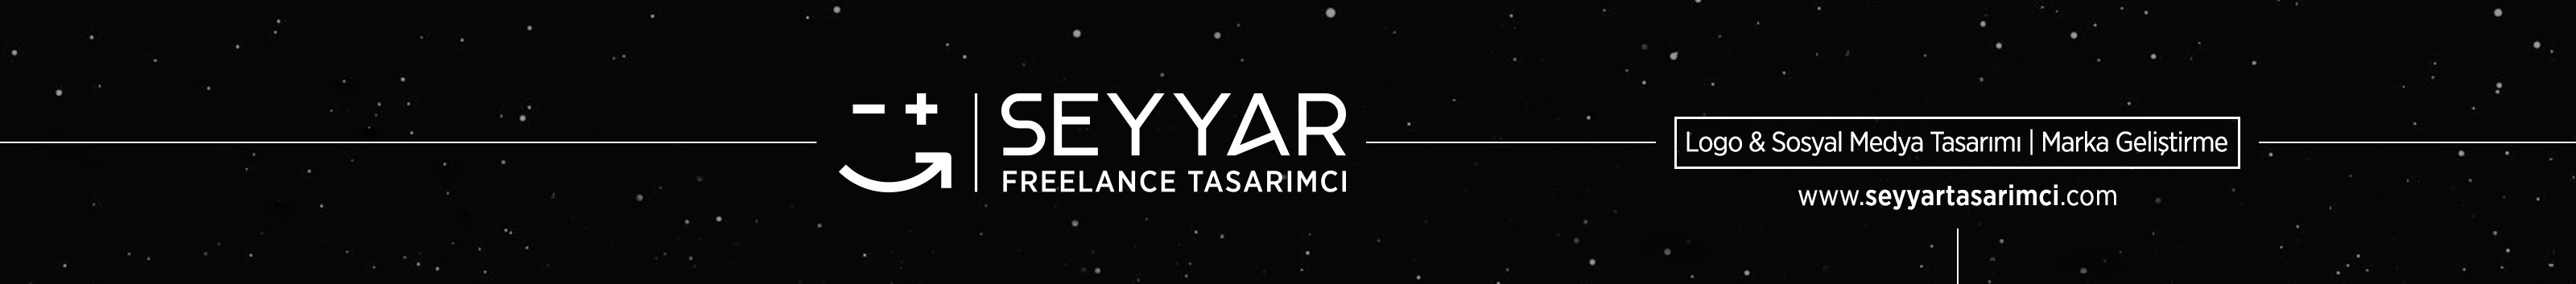 Seyyar Tasarımcı ✪'s profile banner